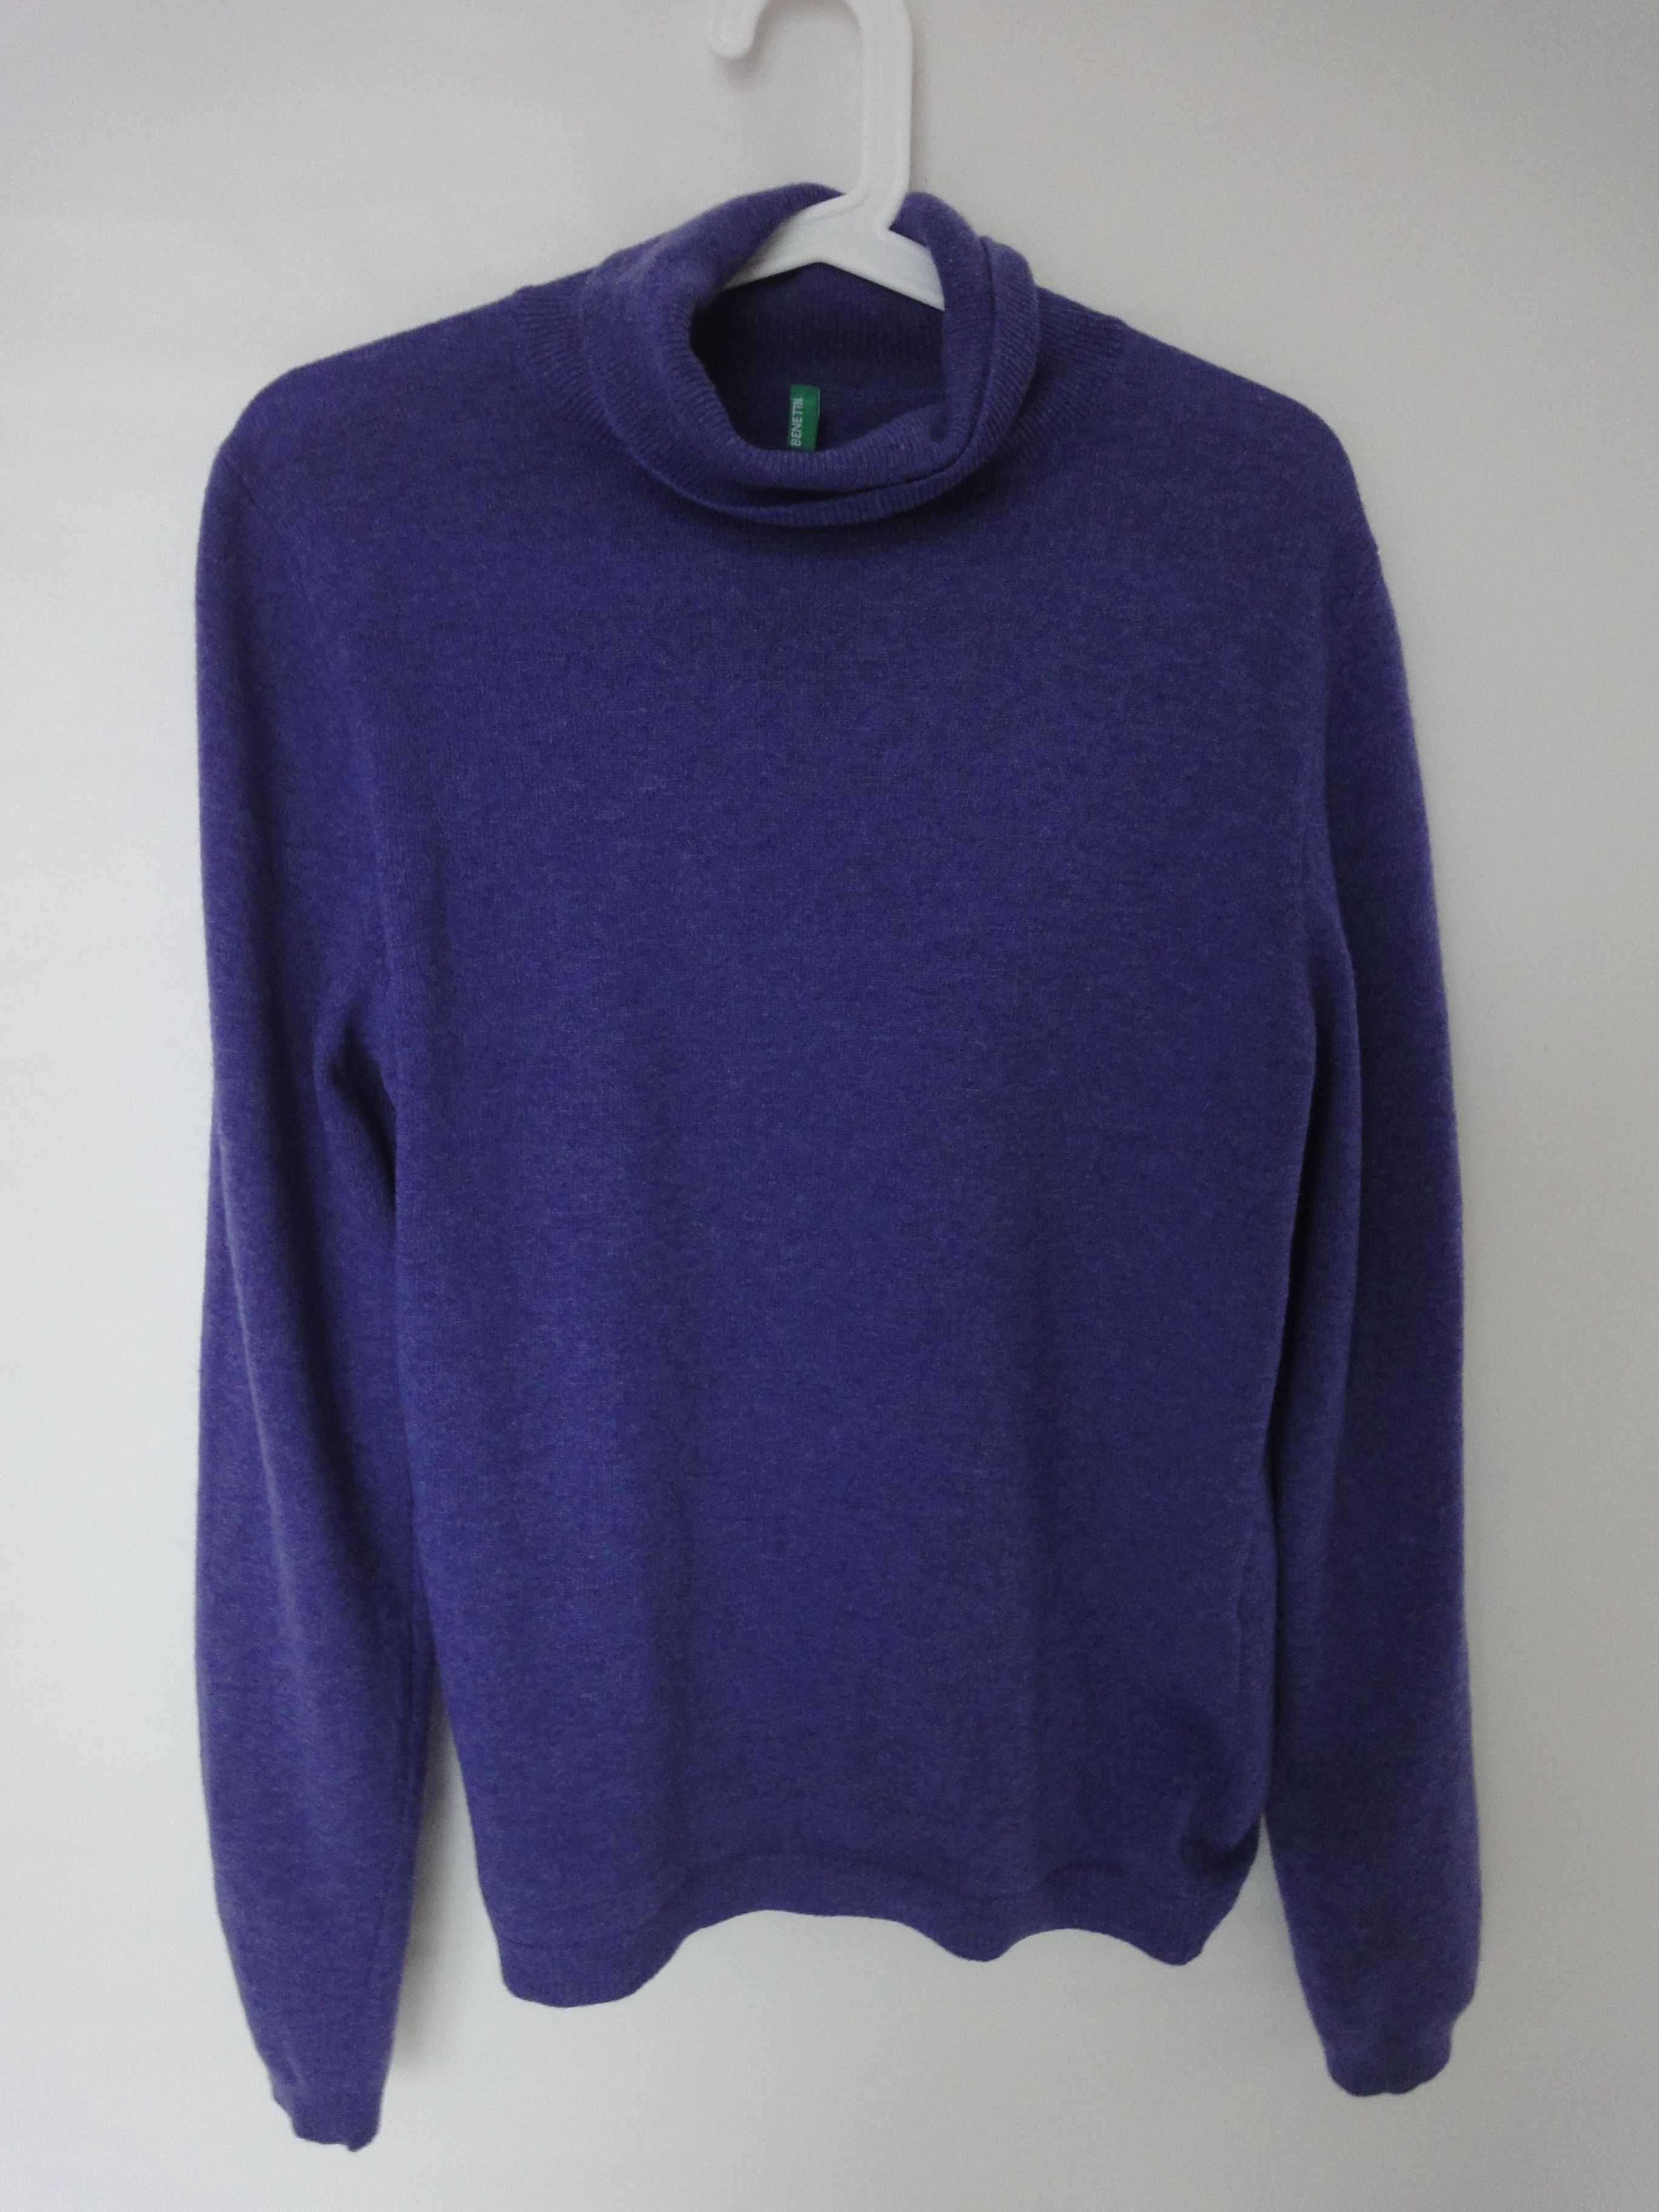 Jagodowy rozbielony damski sweter golf - kaszmir 100% Benetton L